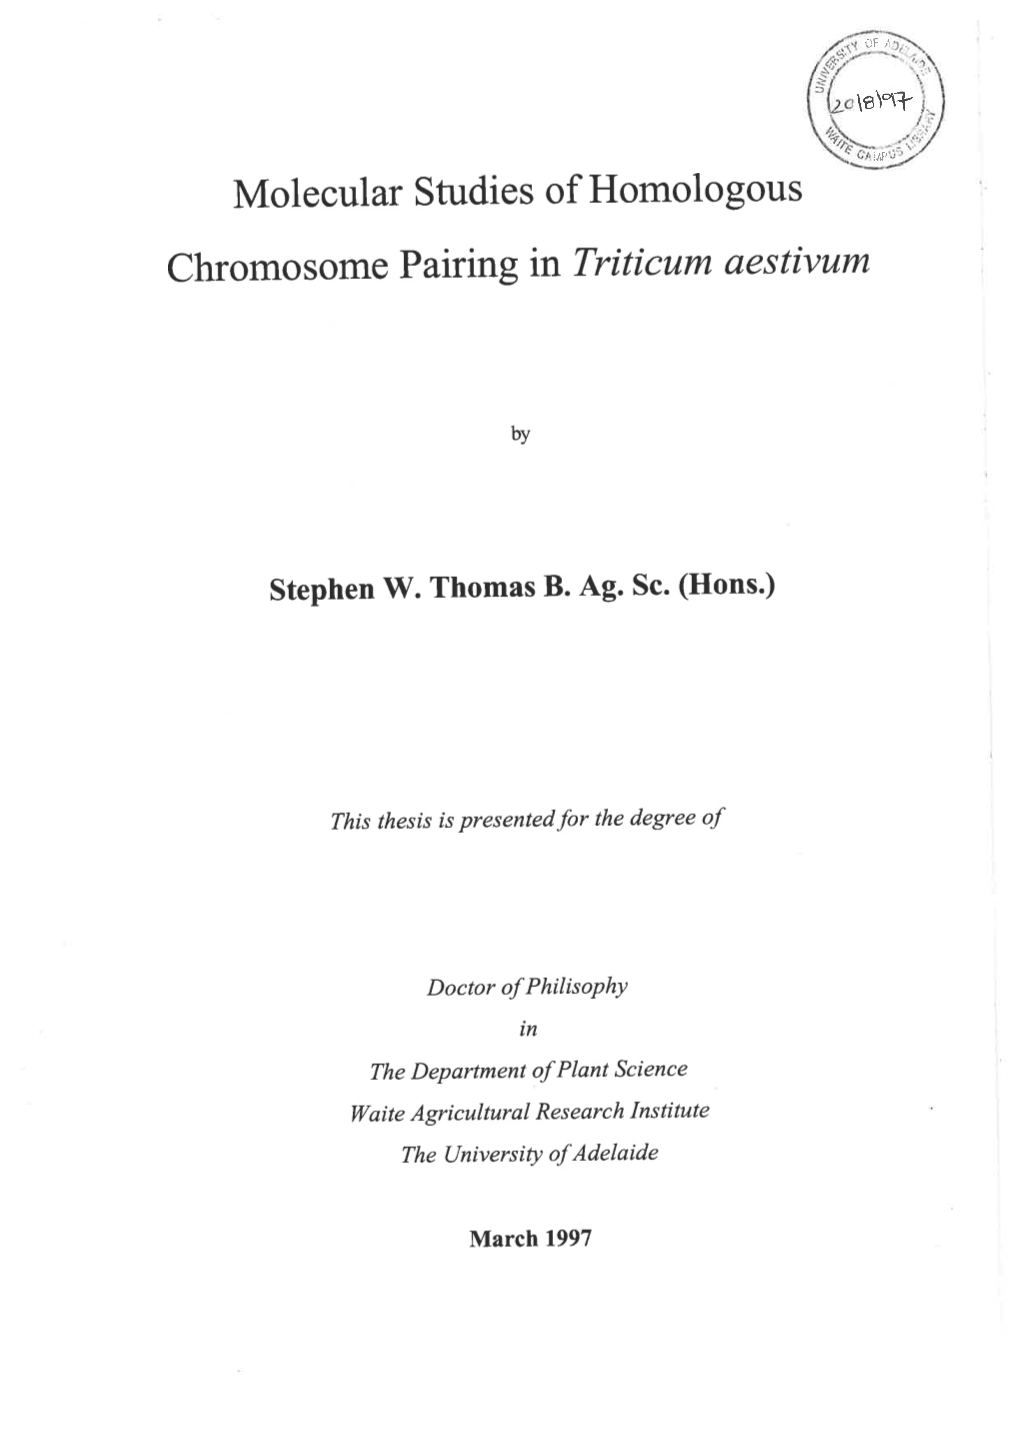 Molecular Studies of Homologous Chromosome Pairing in Triticum